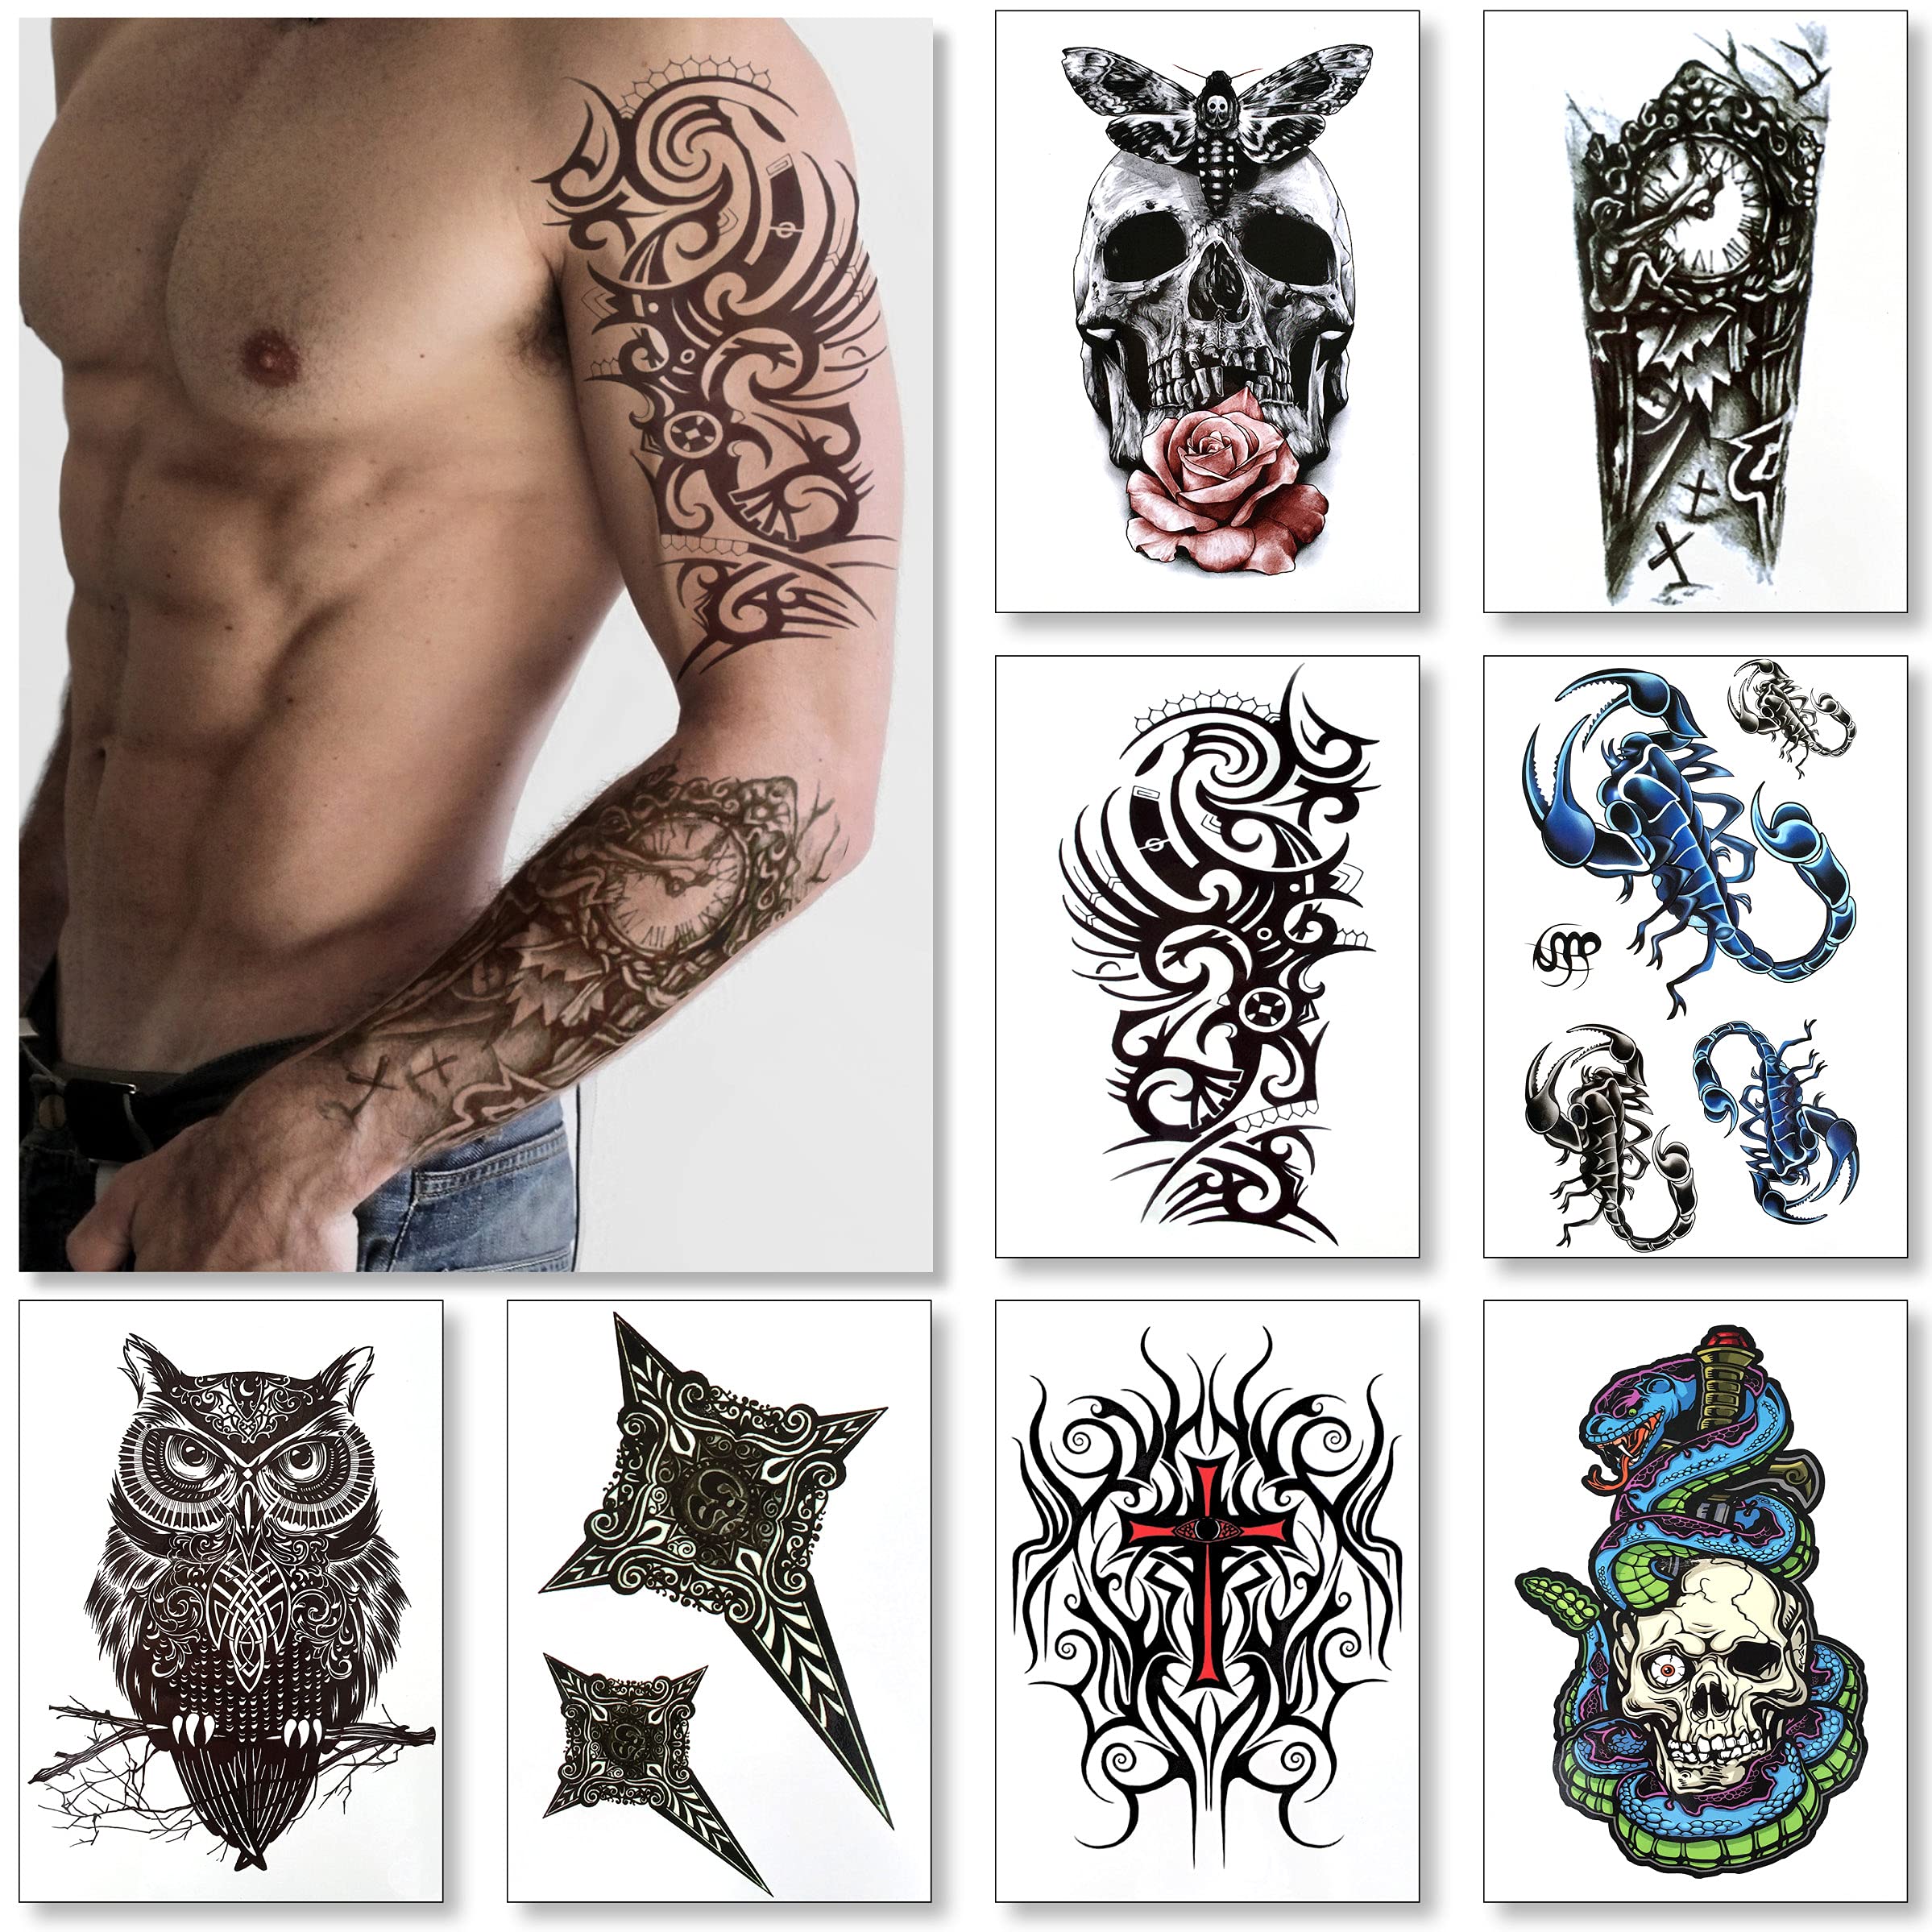 Shin Tattoo Owl - Best Tattoo Ideas Gallery